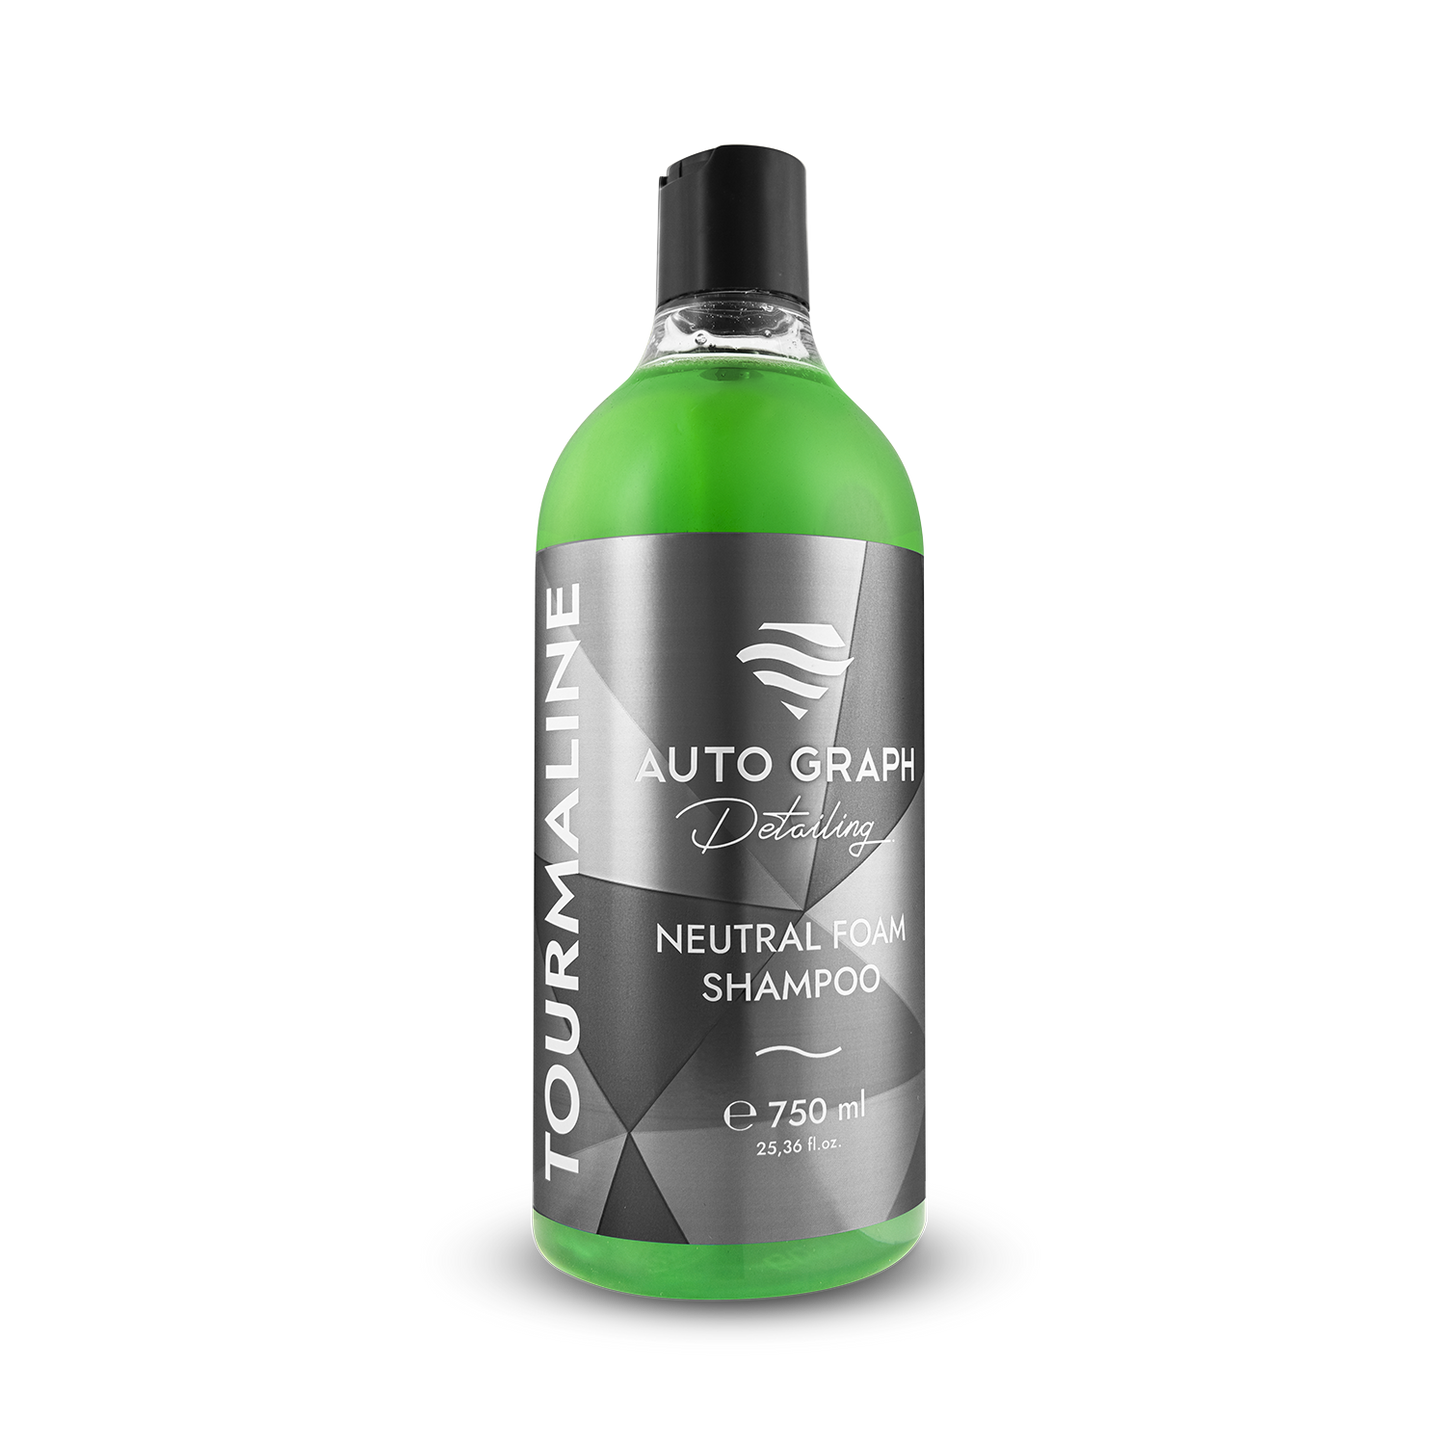 Auto Graph Tourmaline Neutral Foam Shampoo, Tropical Fruits - 750ml